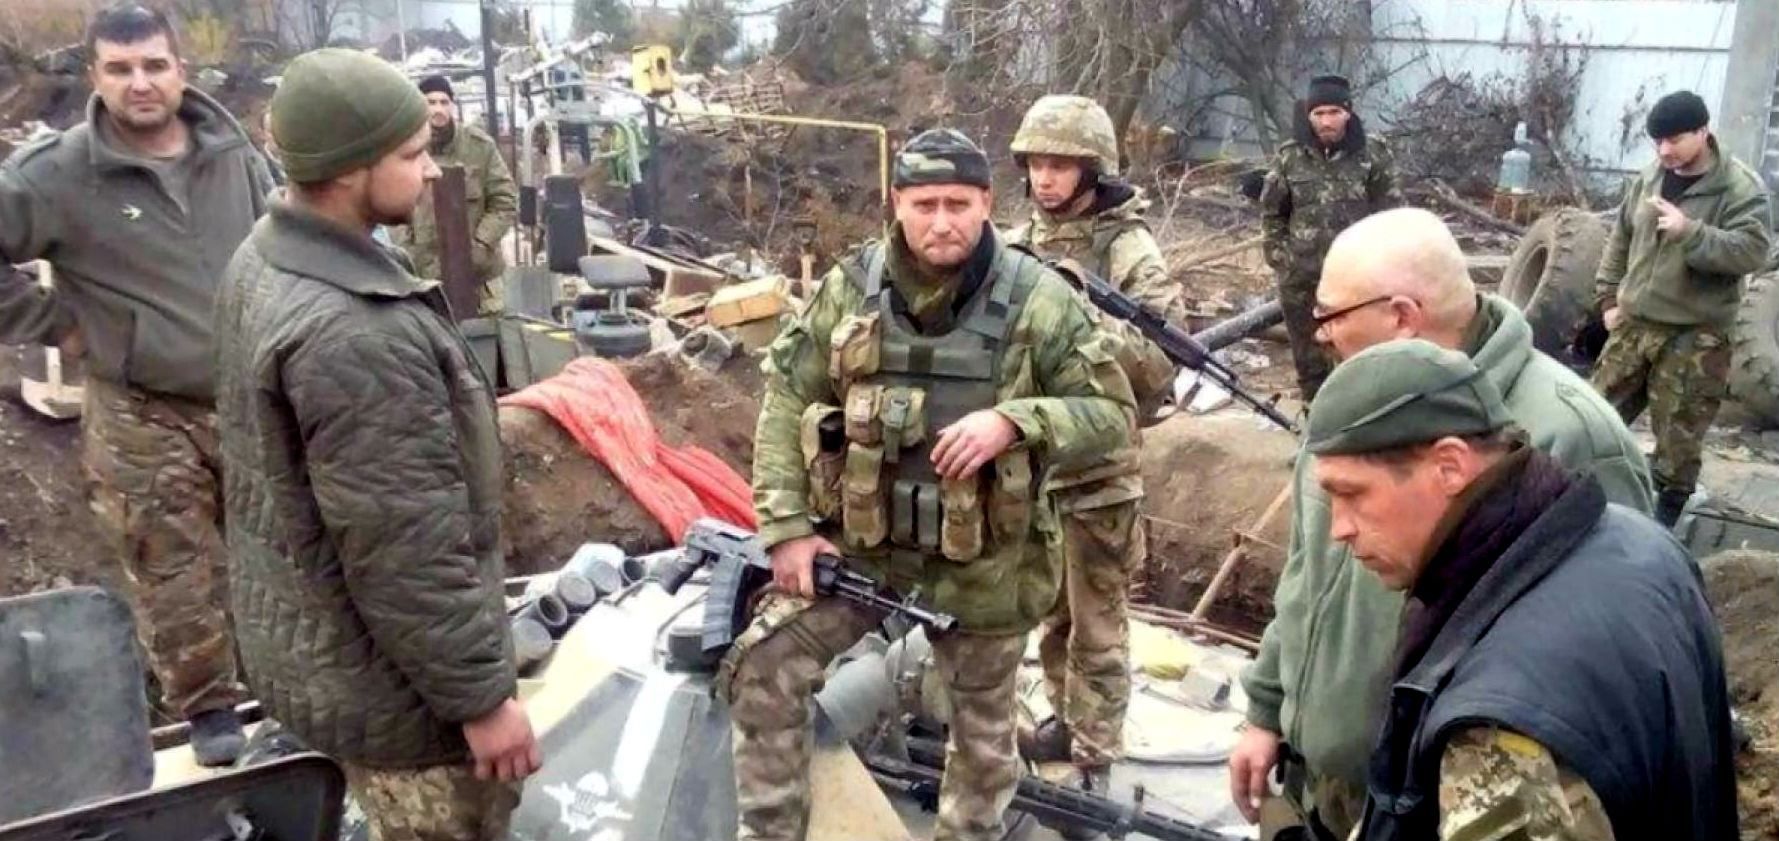 Найактуальніші фото 22 грудня:у Миколаєві зустріли бійців, Польща надала 250 тон допомоги